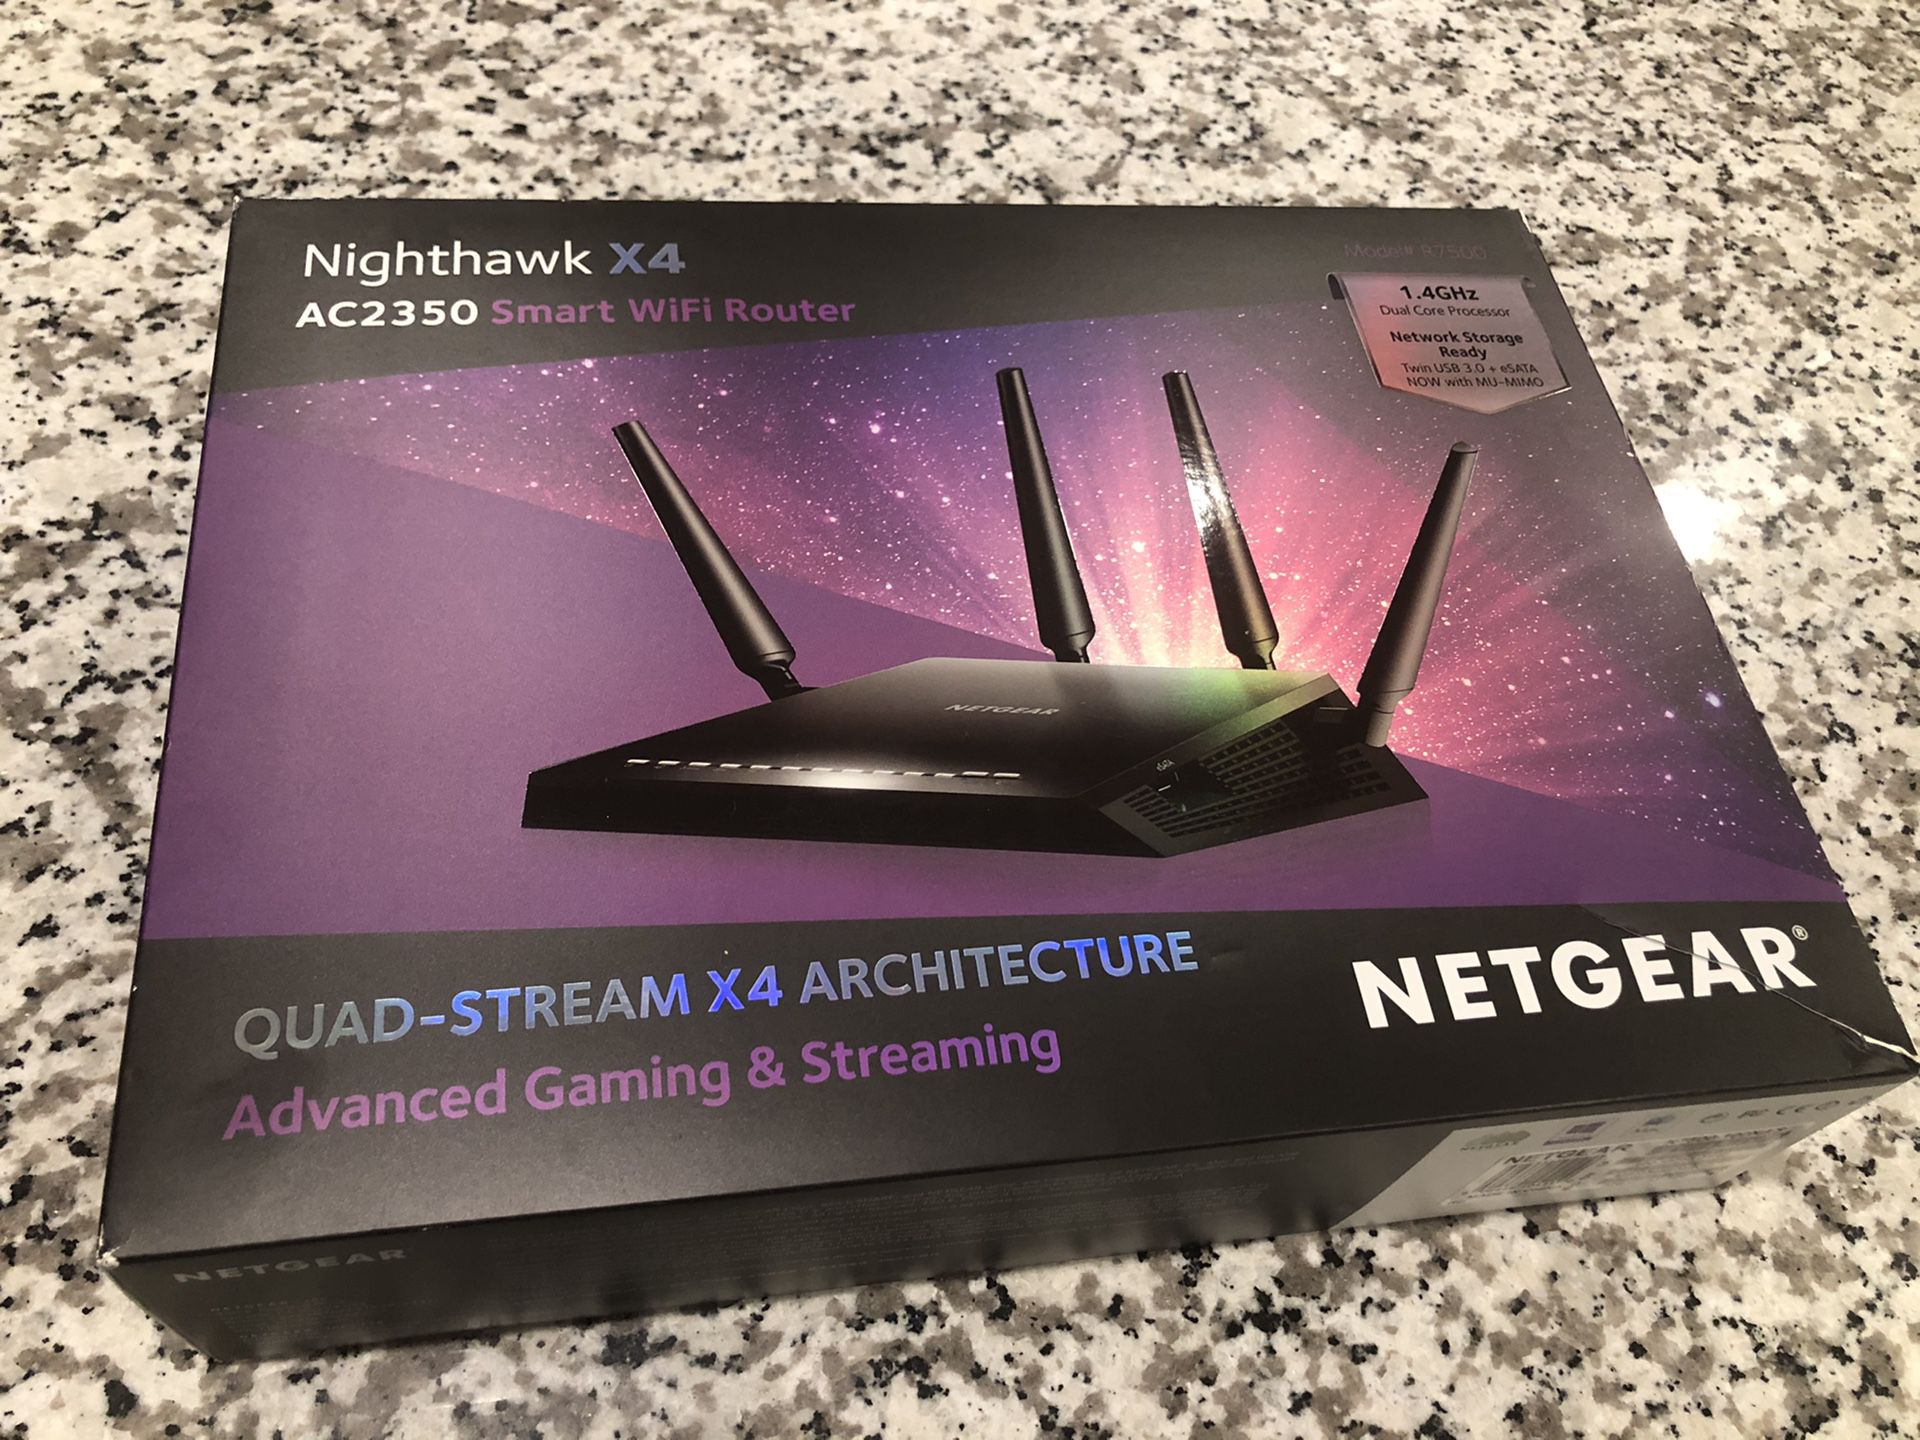 NETGEAR R7500 Nighthawk X4 AC2350 Dual Band WiFi Router